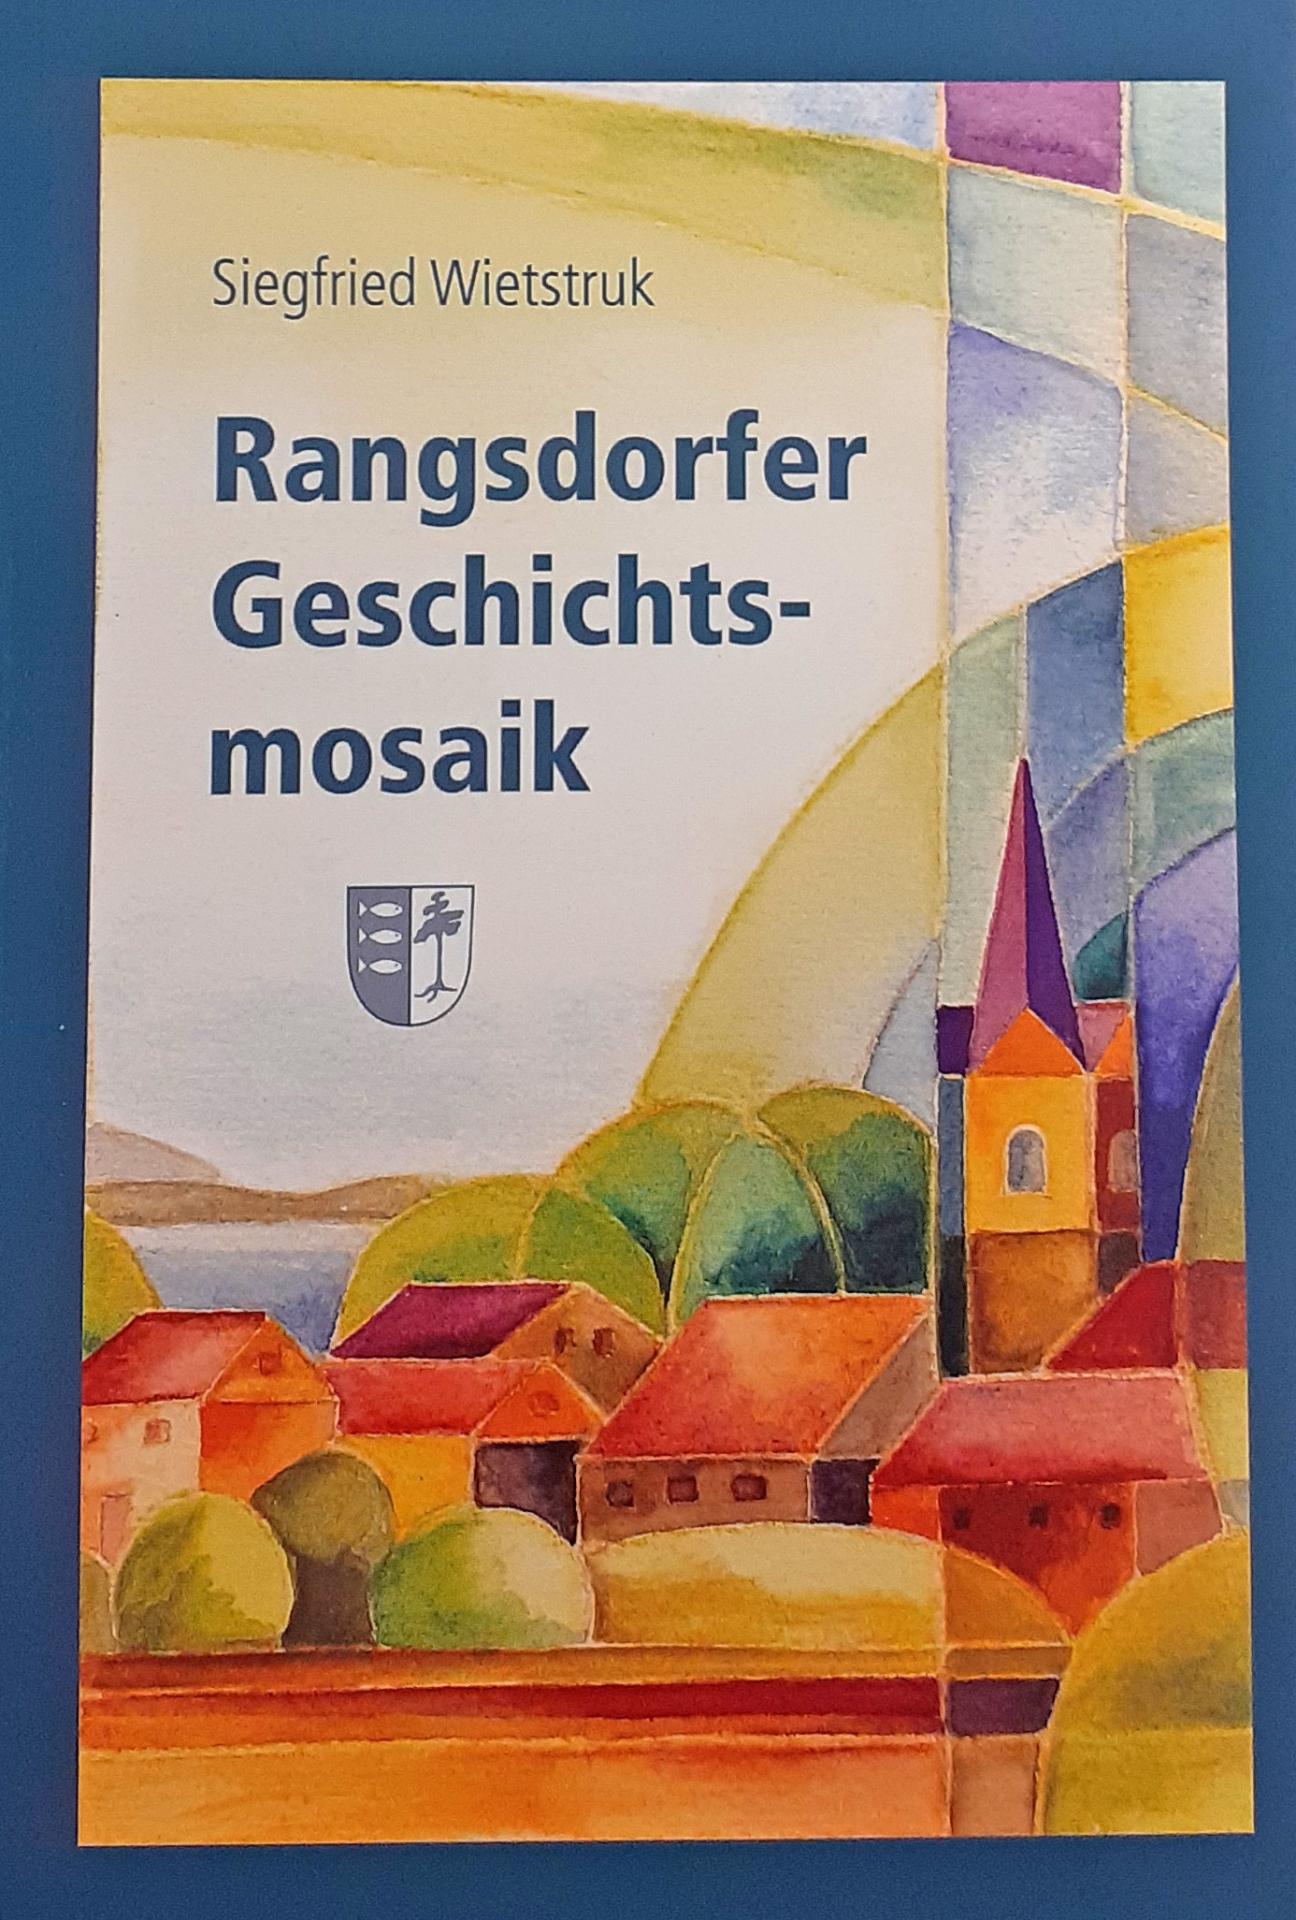 © Titelseite des Buches "Rangsdorfer Geschichtsmosaik"